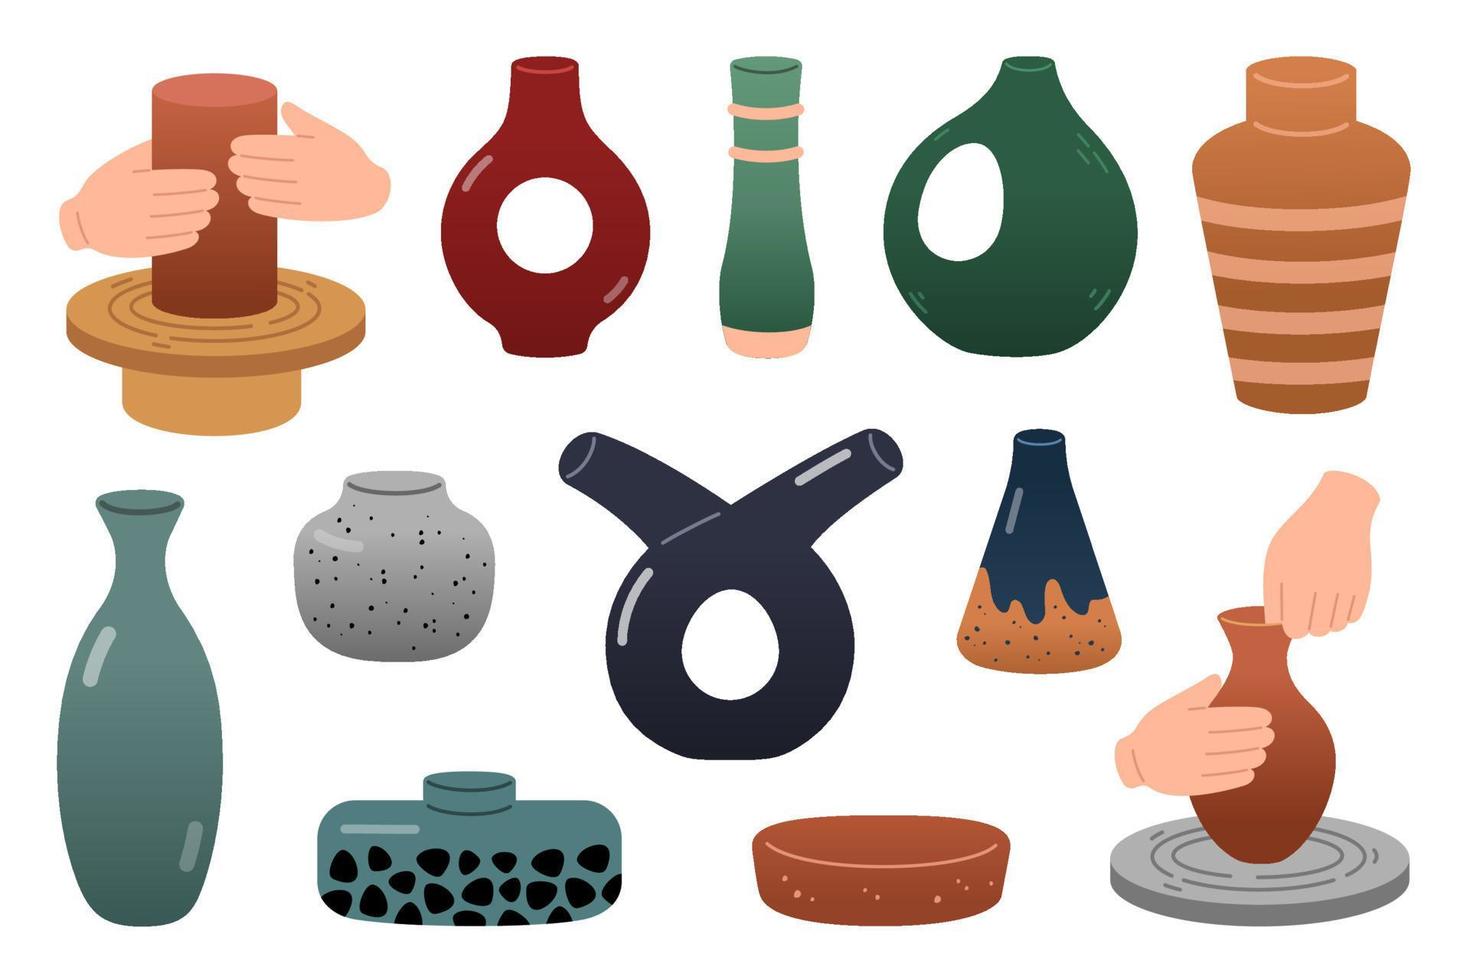 keramisk köksutrustning, skålar och burkar uppsättning. händer håller på med keramisk maträtt, färgrik servis, lera Produkter. hantverk hobby vektor illustration.